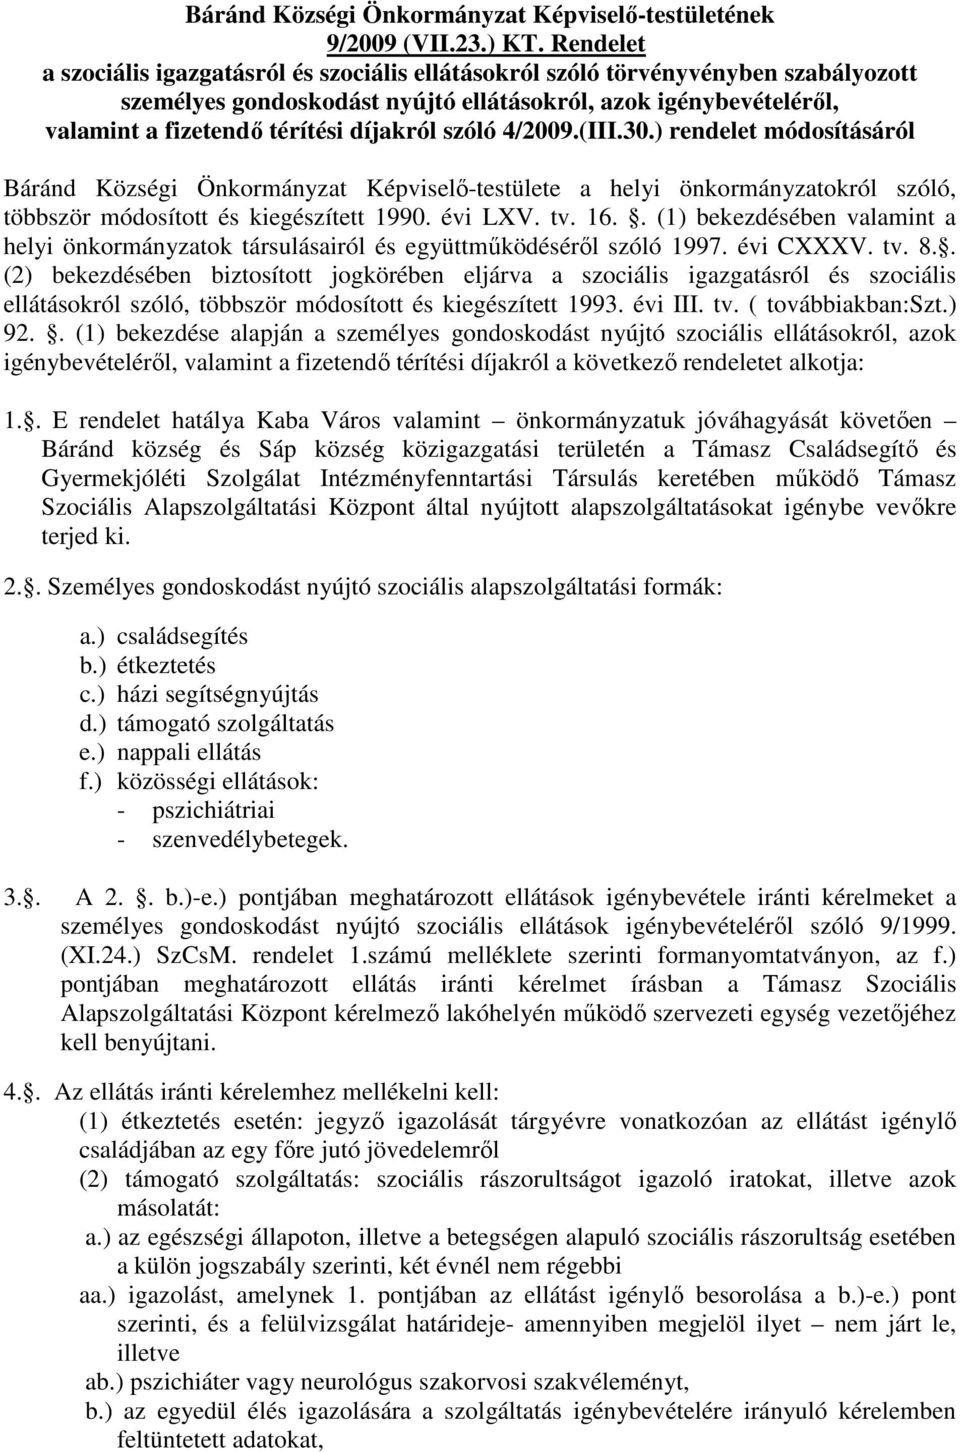 szóló 4/2009.(III.30.) rendelet módosításáról Báránd Községi Önkormányzat Képviselı-testülete a helyi önkormányzatokról szóló, többször módosított és kiegészített 1990. évi LXV. tv. 16.